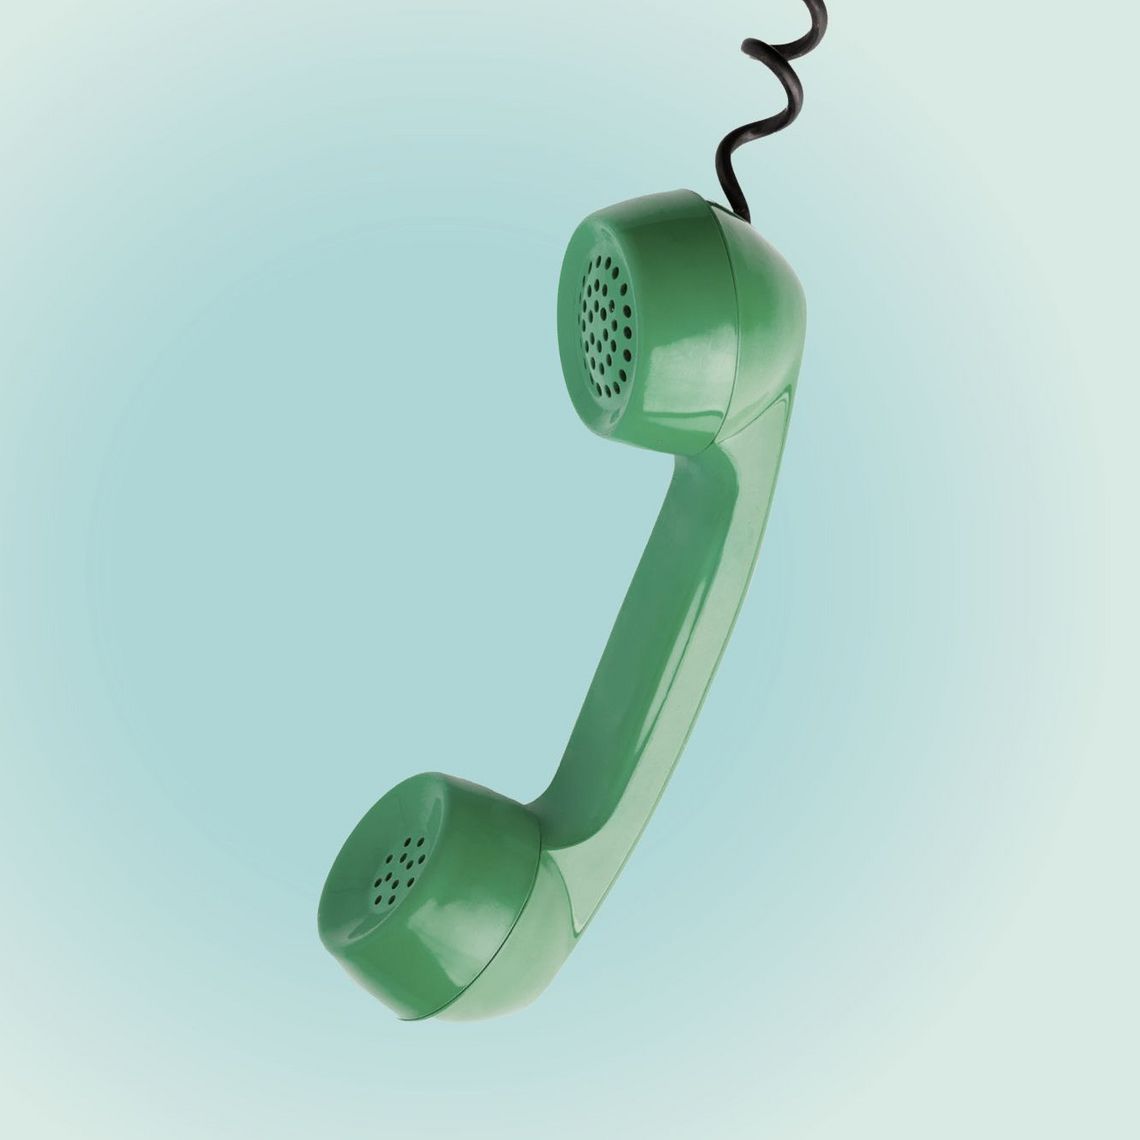 Grüner Telefonhörer